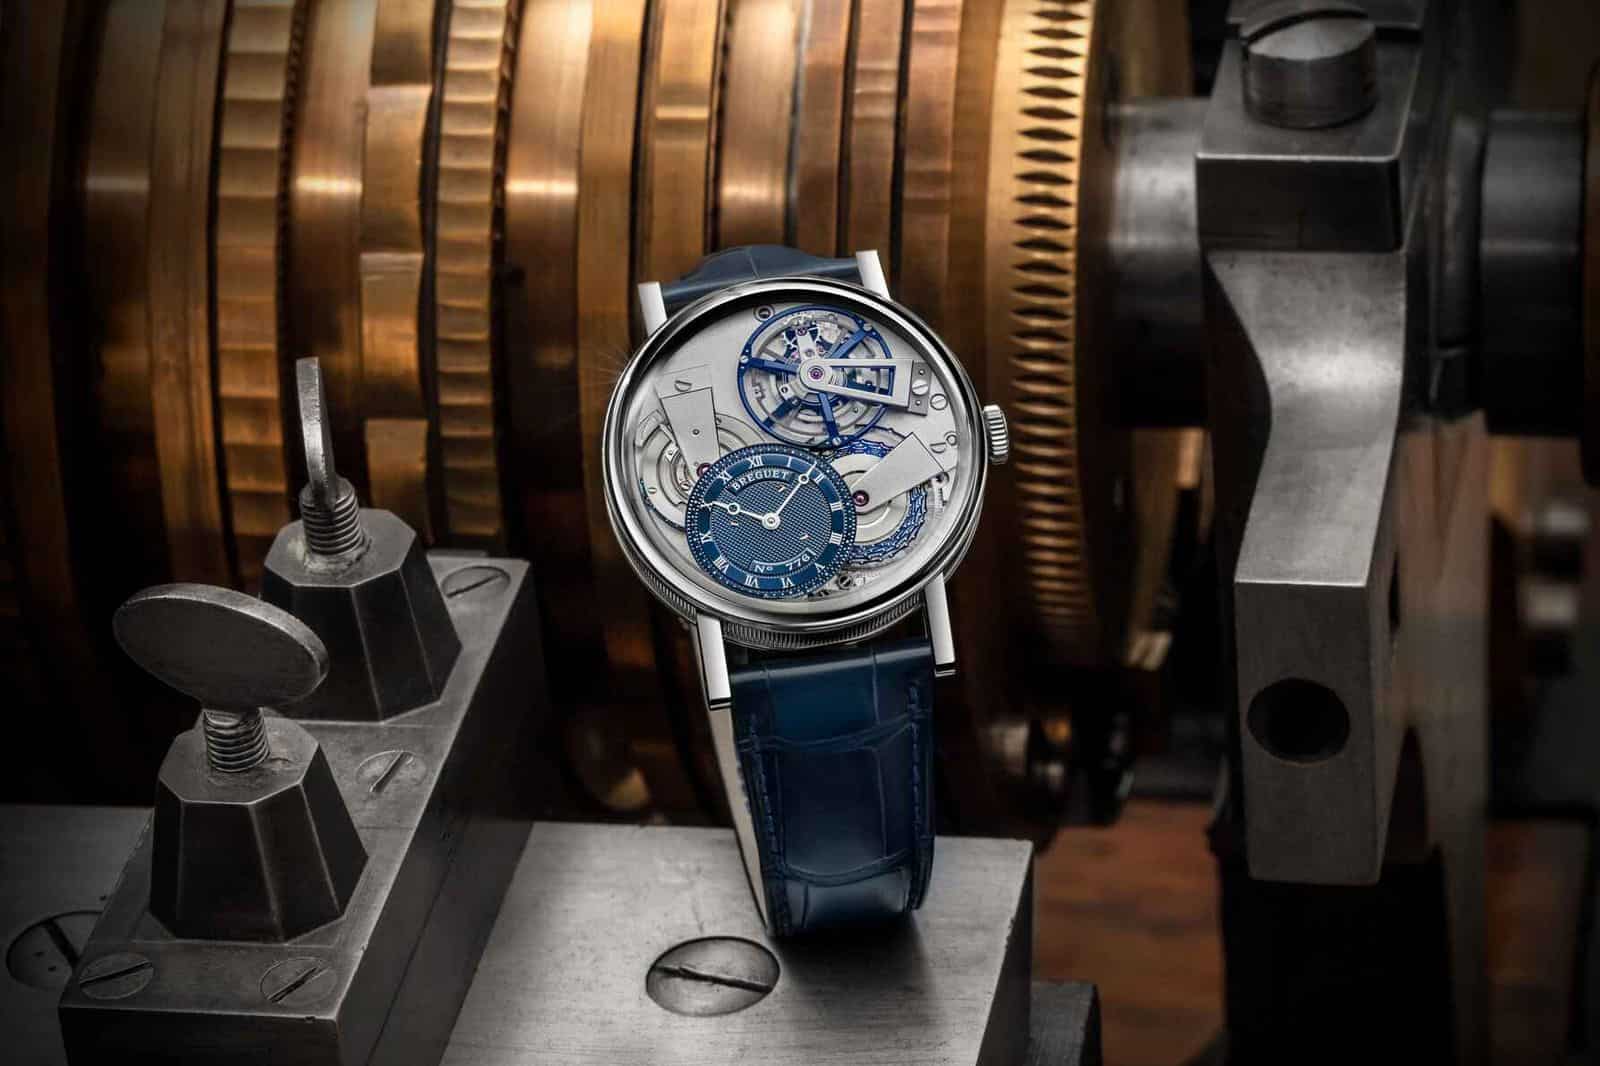 Breguet, modél panganyarna tina kumpulan Tradisi, miéling kreasi jam tangan Tourbillon ku Abraham-Louis.